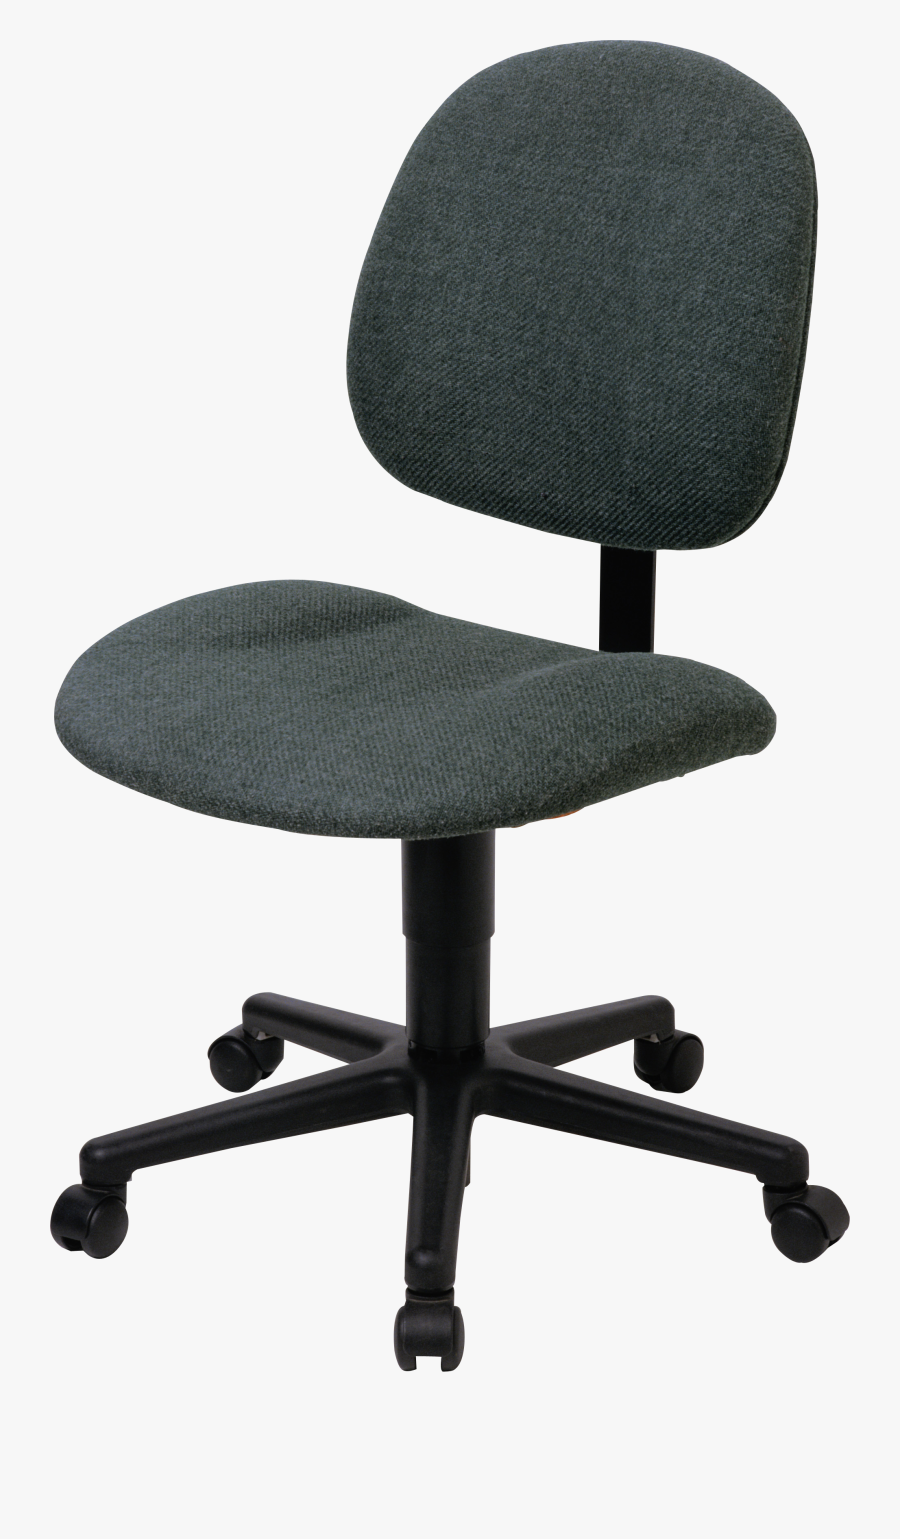 Office Chair Desk Clip Art - Office Chair Transparent Clipart, Transparent Clipart